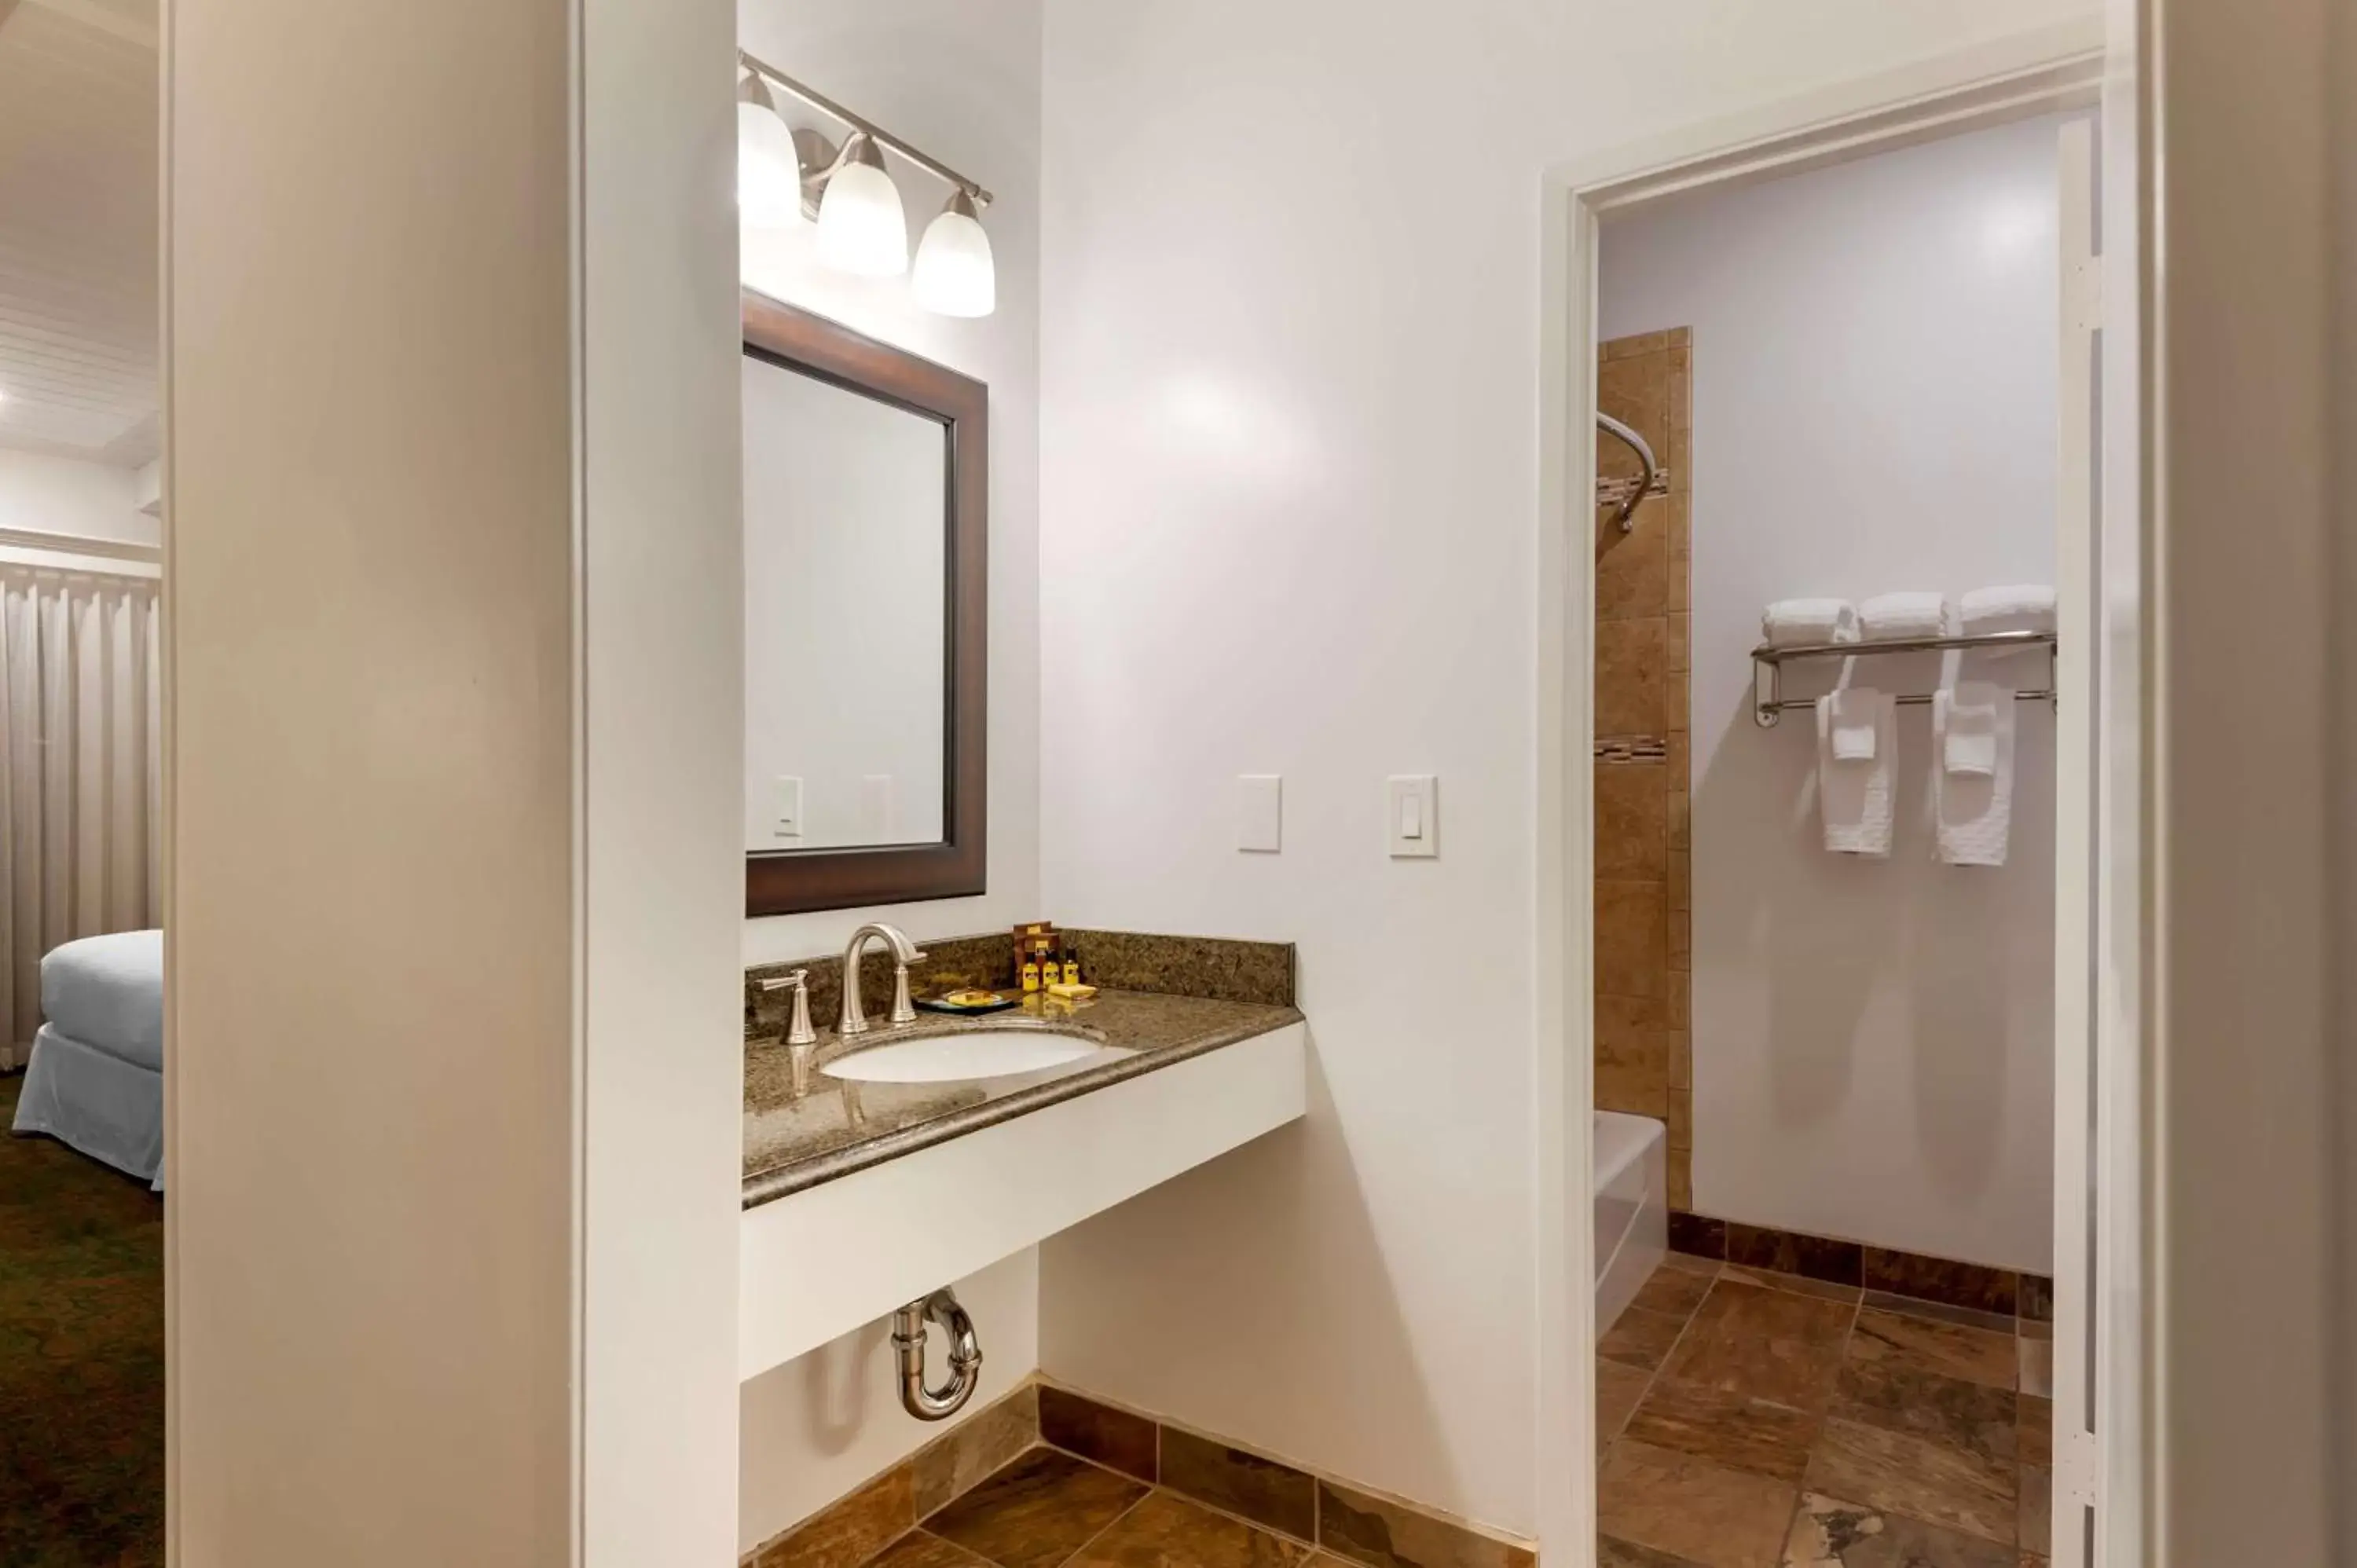 Bedroom, Bathroom in Best Western Plus Santa Barbara